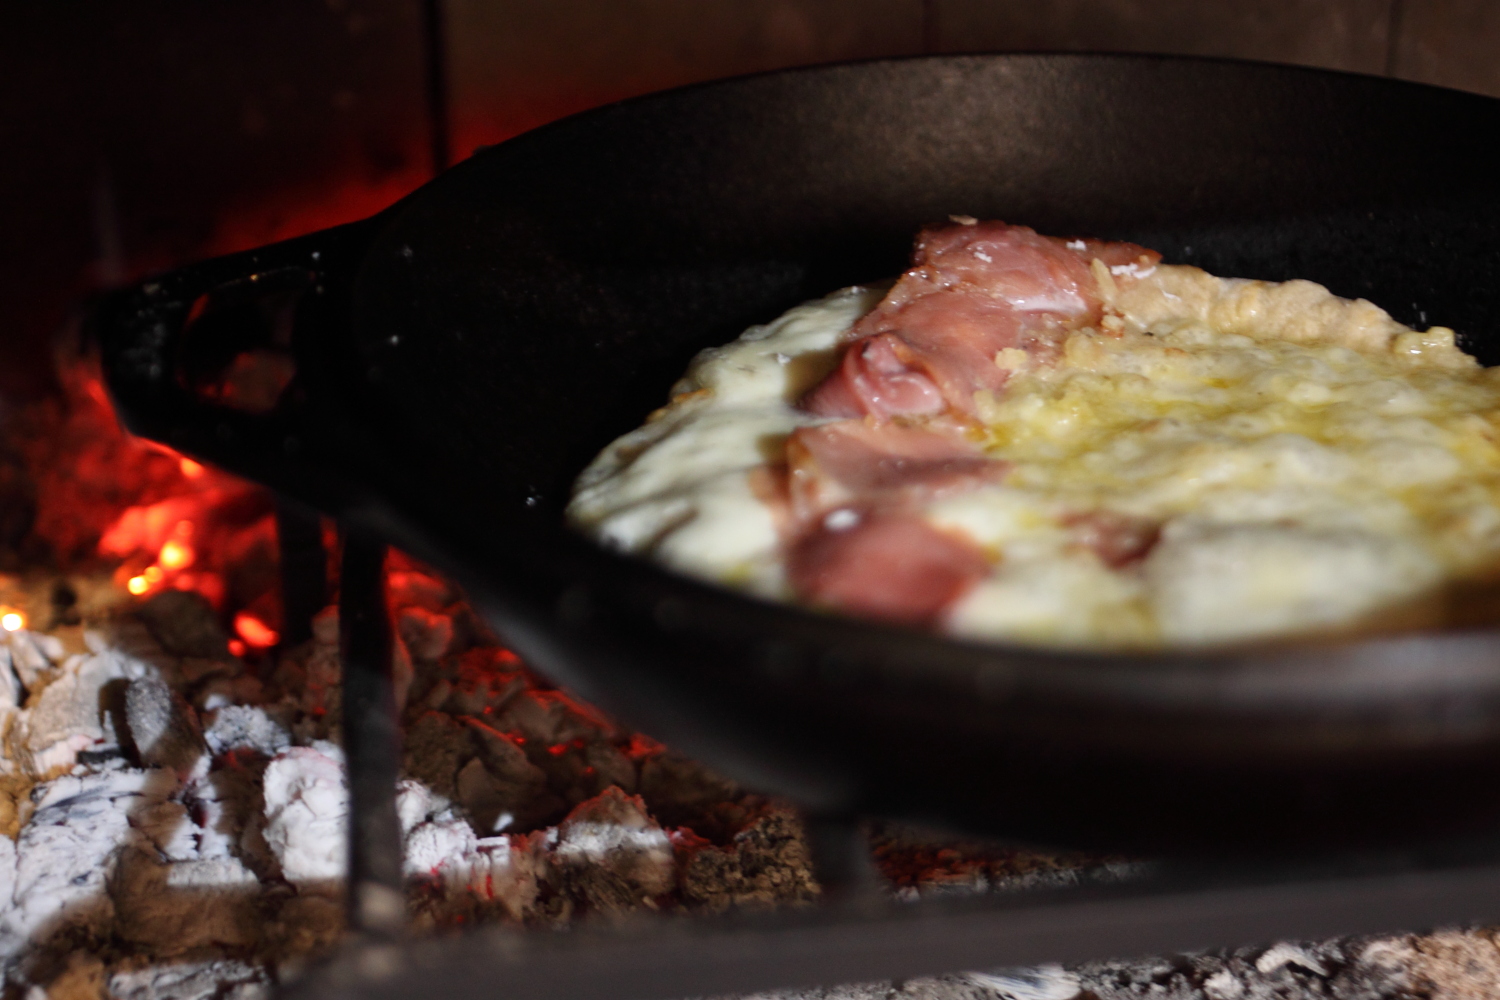 桜の薪でピザを焼く！ トッピングはシンプルな方が良い。 焼き上がったピザを口に入れると桜の優しい香りが口いっぱいに広がります。 